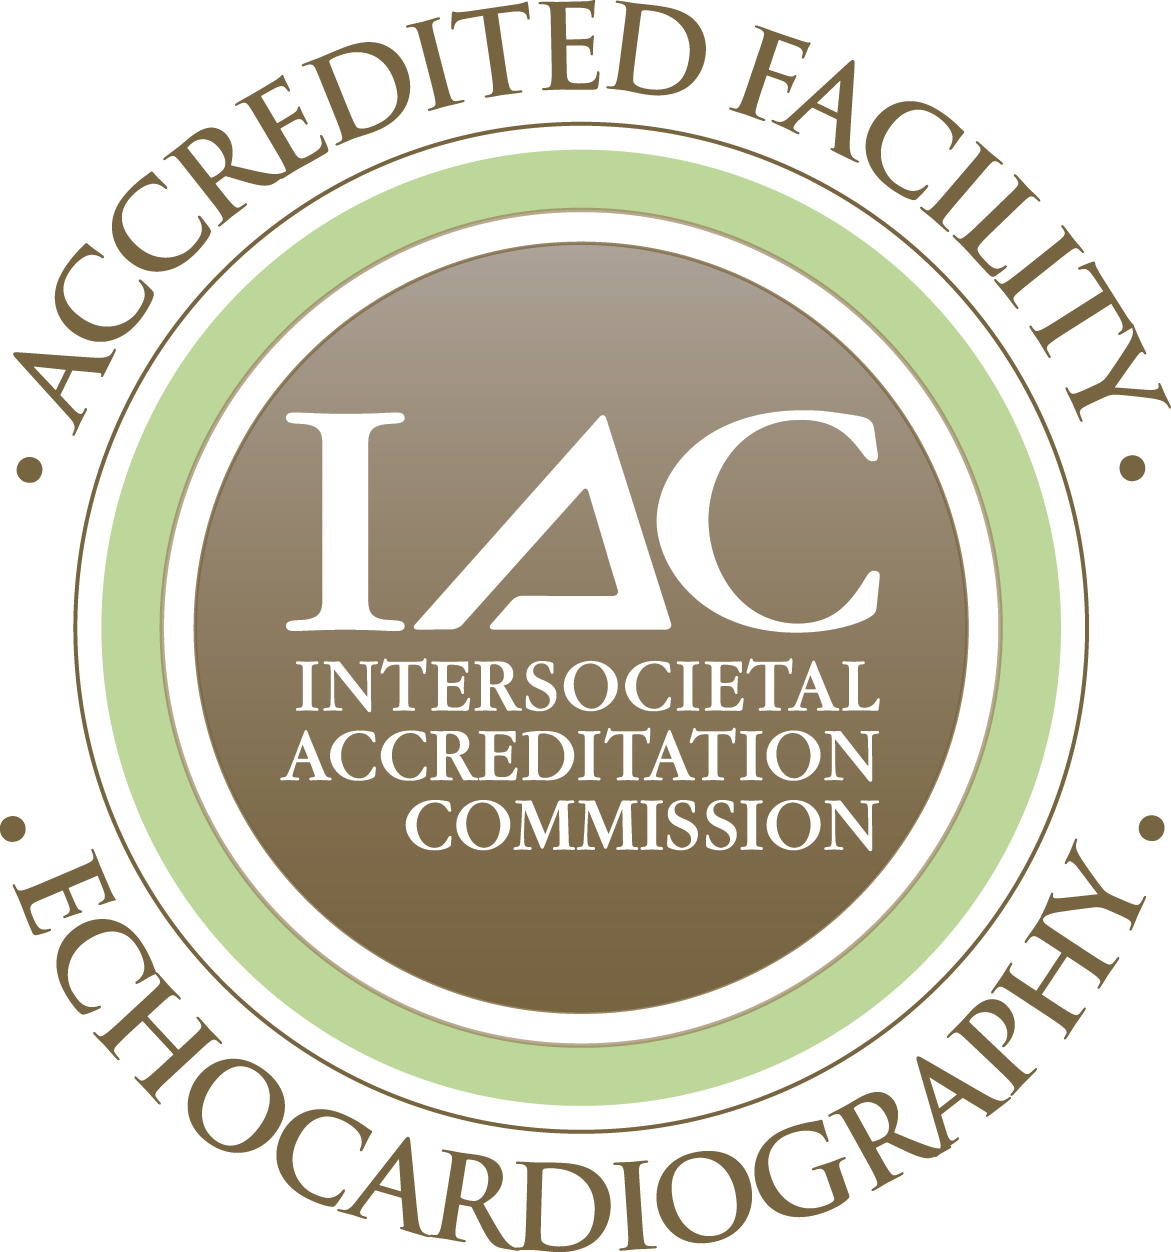 IAC echocariography award